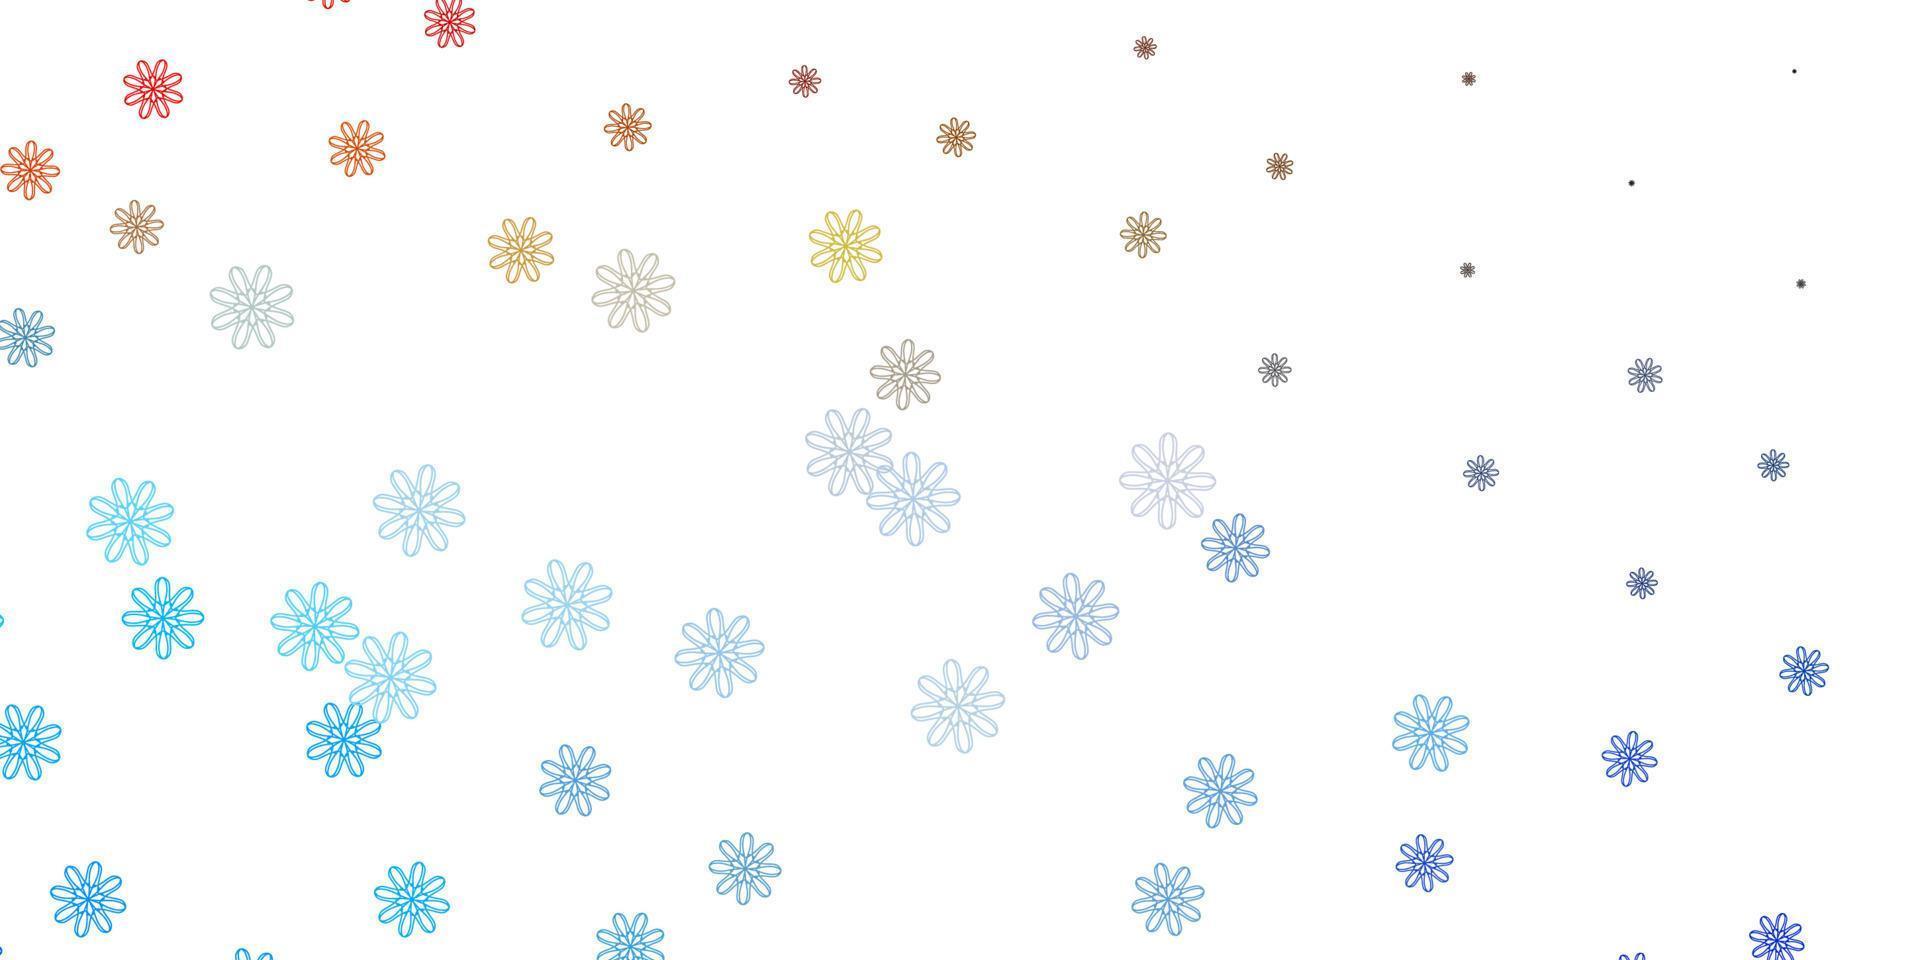 texture de doodle vecteur bleu clair, jaune avec des fleurs.